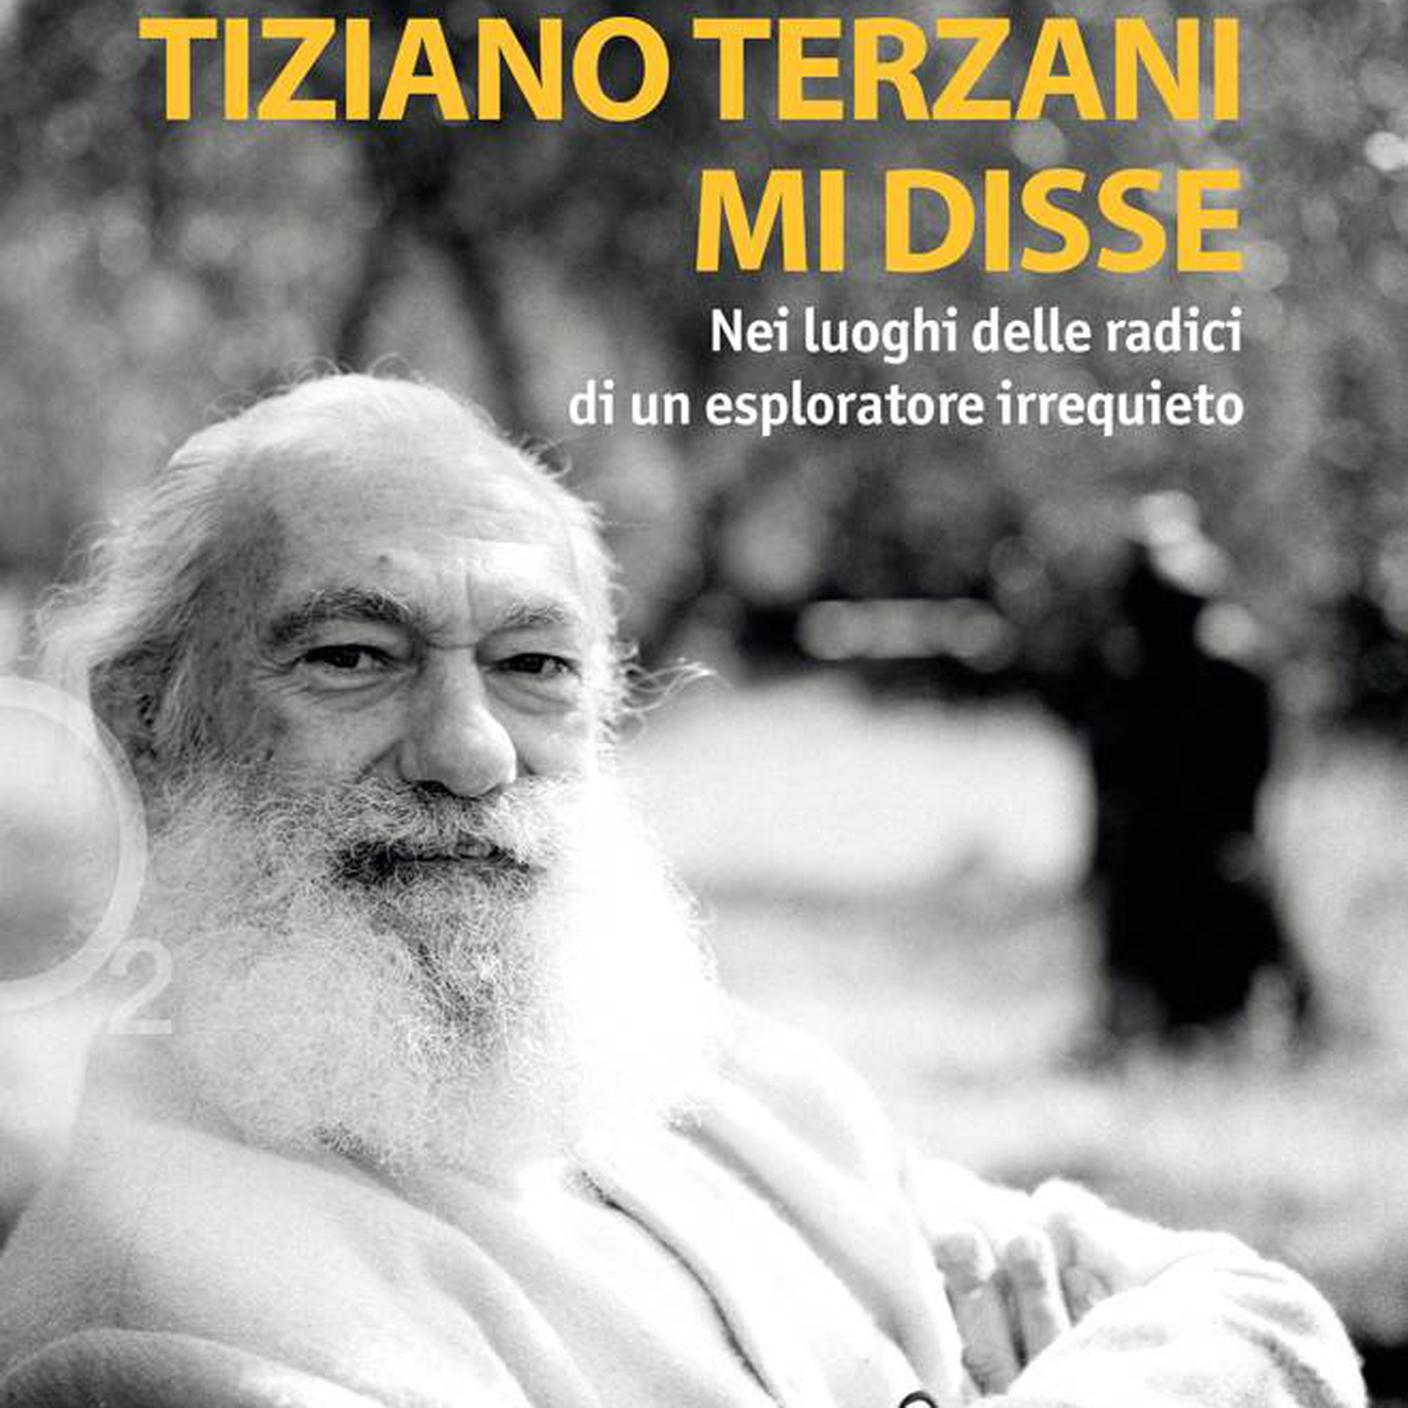 "Tiziano Terzani mi disse" di Jacopo Storni, Ediciclo editore (dettaglio di copertina)